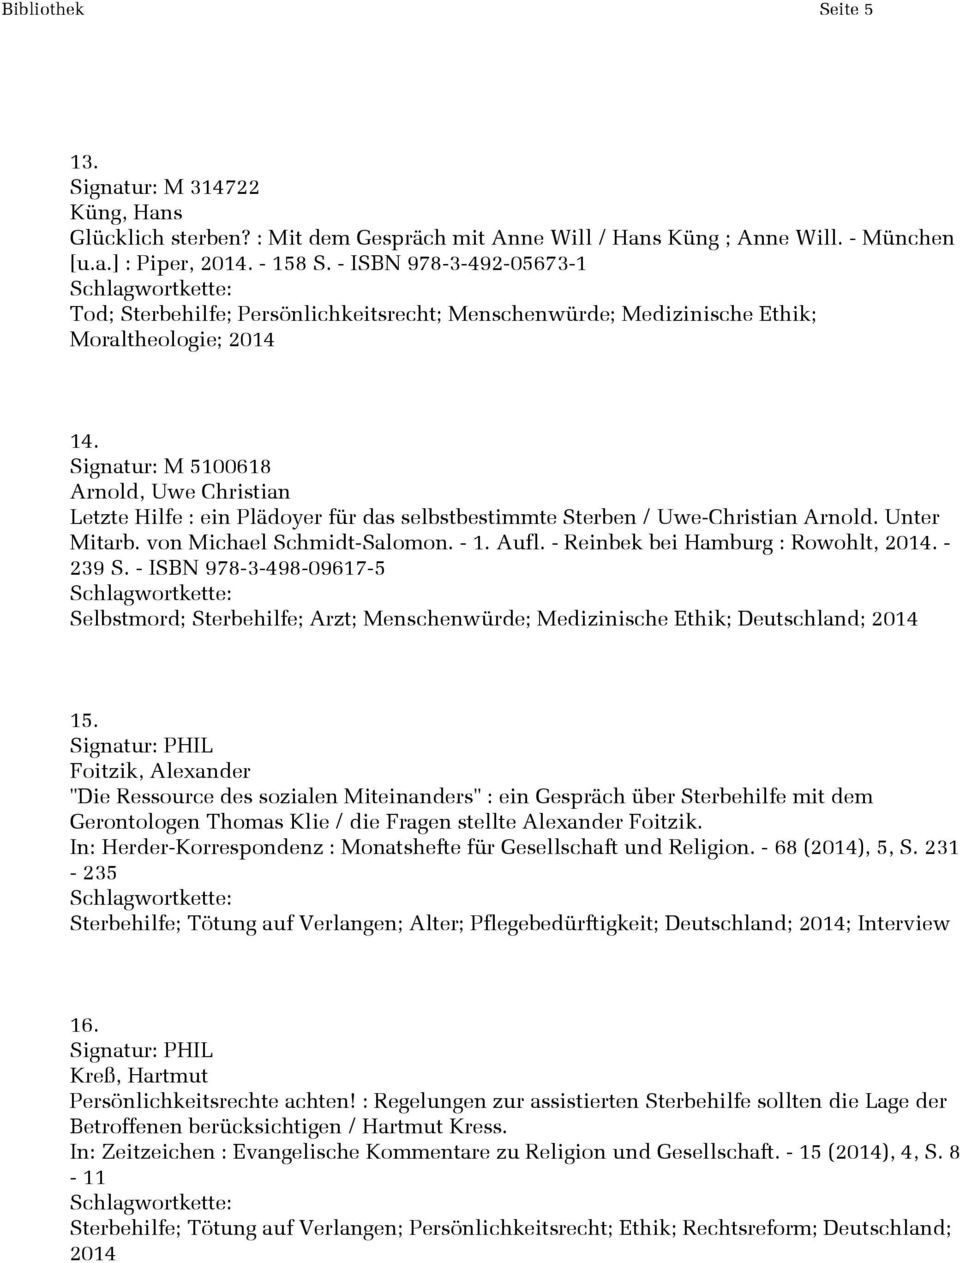 Signatur: M 5100618 Arnold, Uwe Christian Letzte Hilfe : ein Plädoyer für das selbstbestimmte Sterben / Uwe-Christian Arnold. Unter Mitarb. von Michael Schmidt-Salomon. - 1. Aufl.